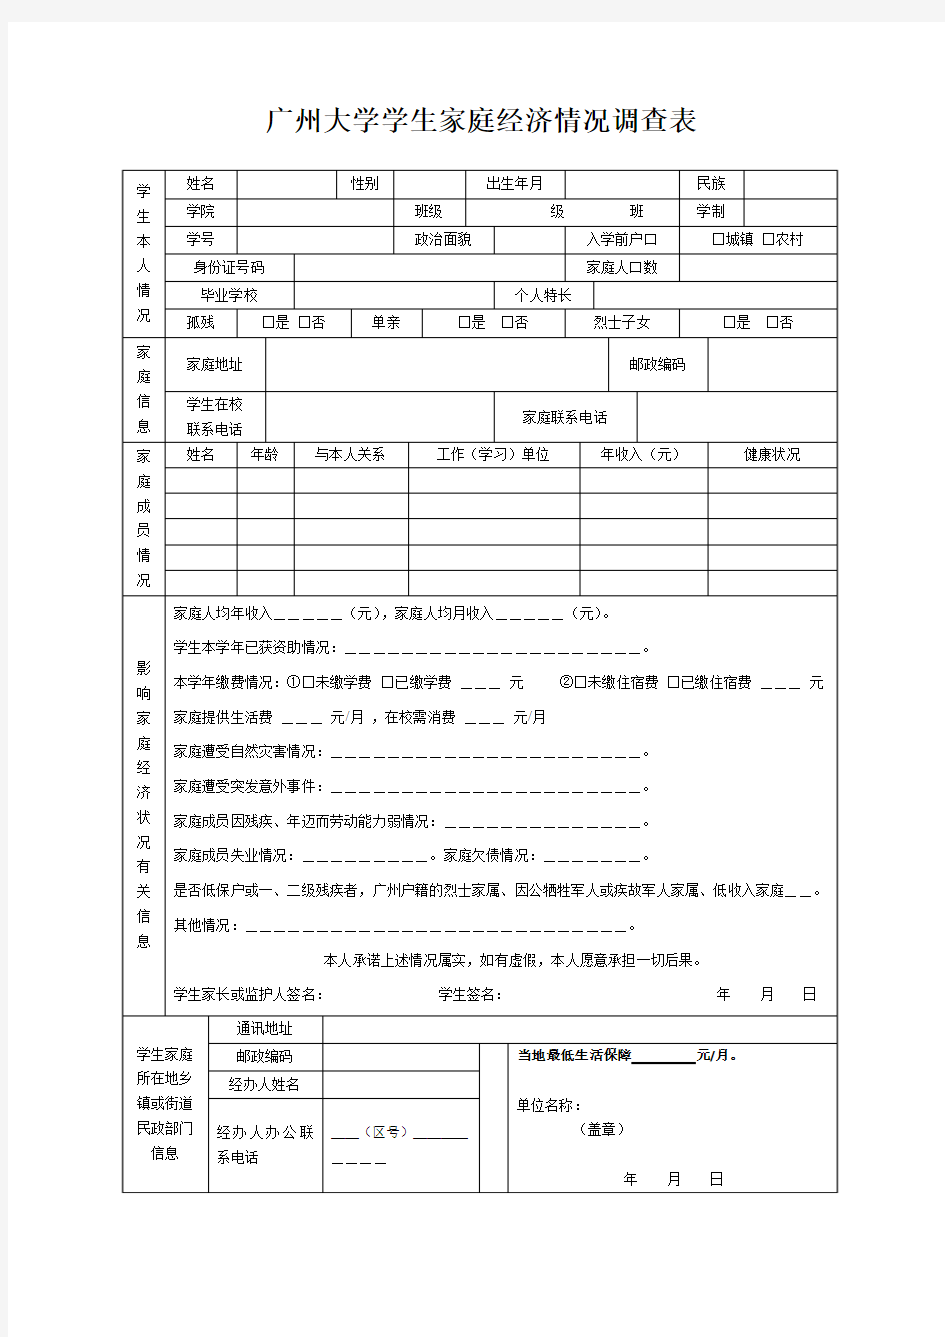 广州大学学生家庭经济情况调查表